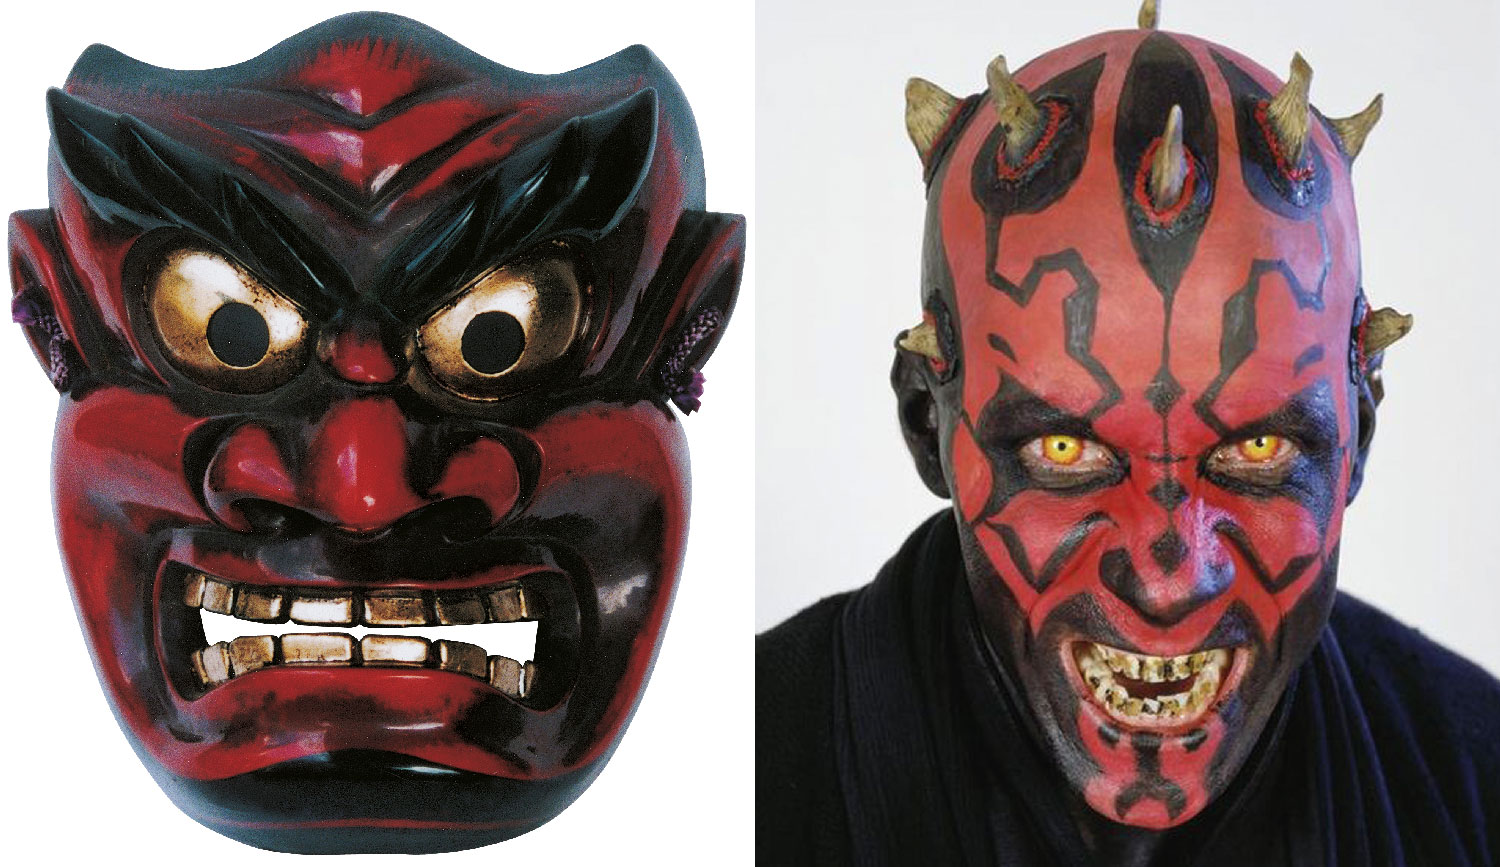  A tatuagem de Darth Maul e a tradicional máscara oni japonesa (representando o ogro Ura): vermelho e preto para simbolizar as forças demoníacas